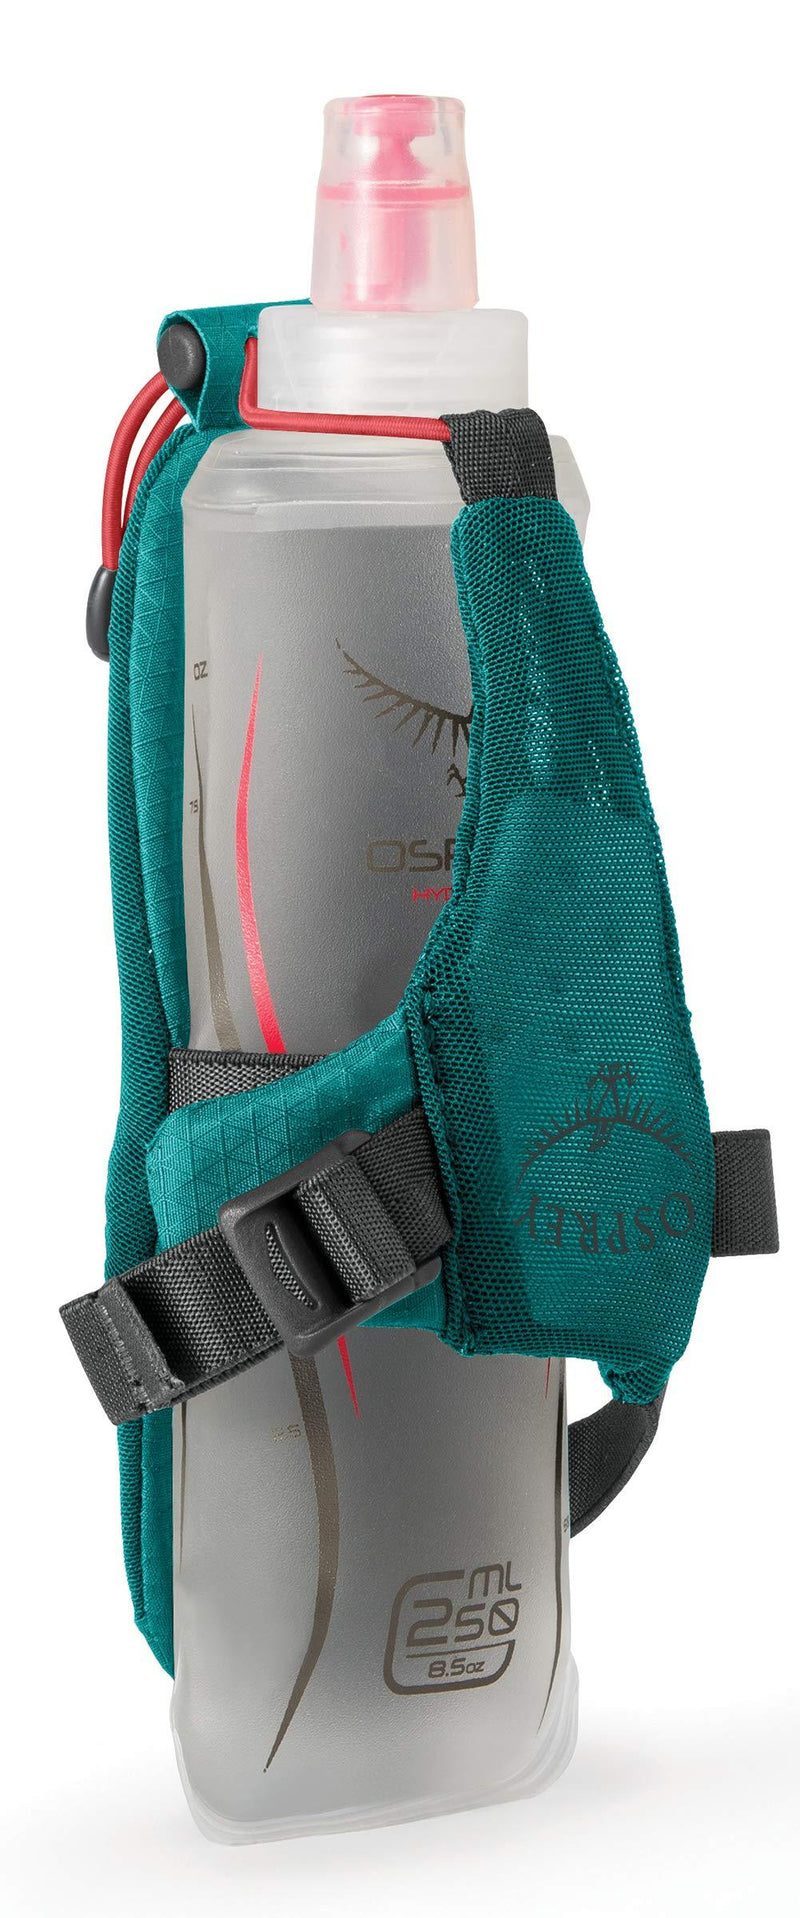 [AUSTRALIA] - Osprey Packs Dyna Handheld Women's Running Flask 